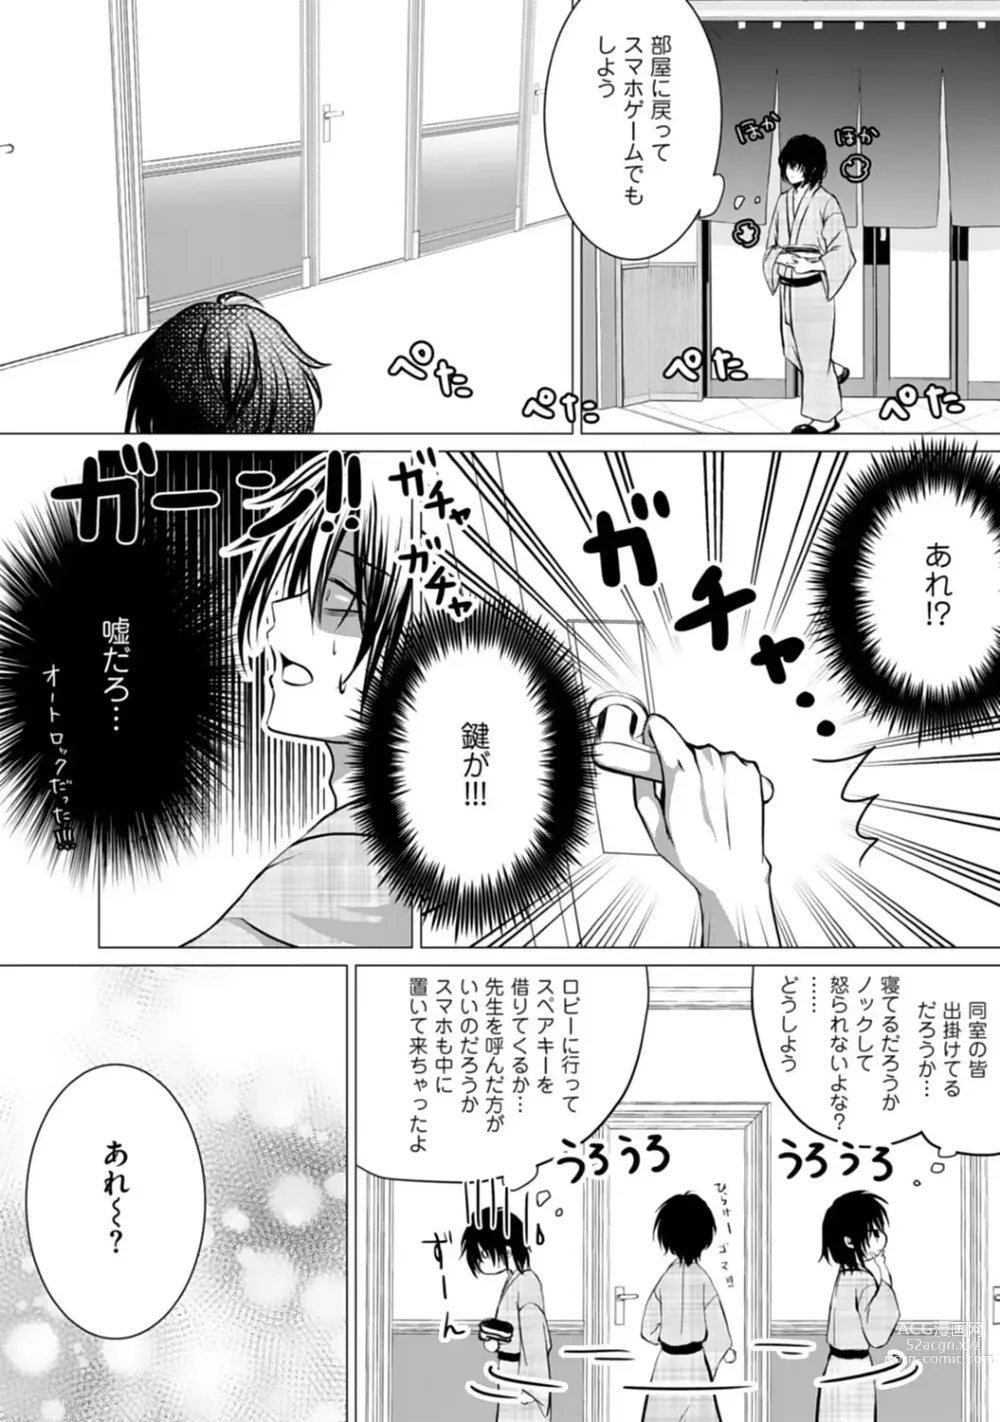 Page 10 of manga Bocchi no Boku demo, Kuzu no Yarichin ni Nareru tte Honto desu ka?